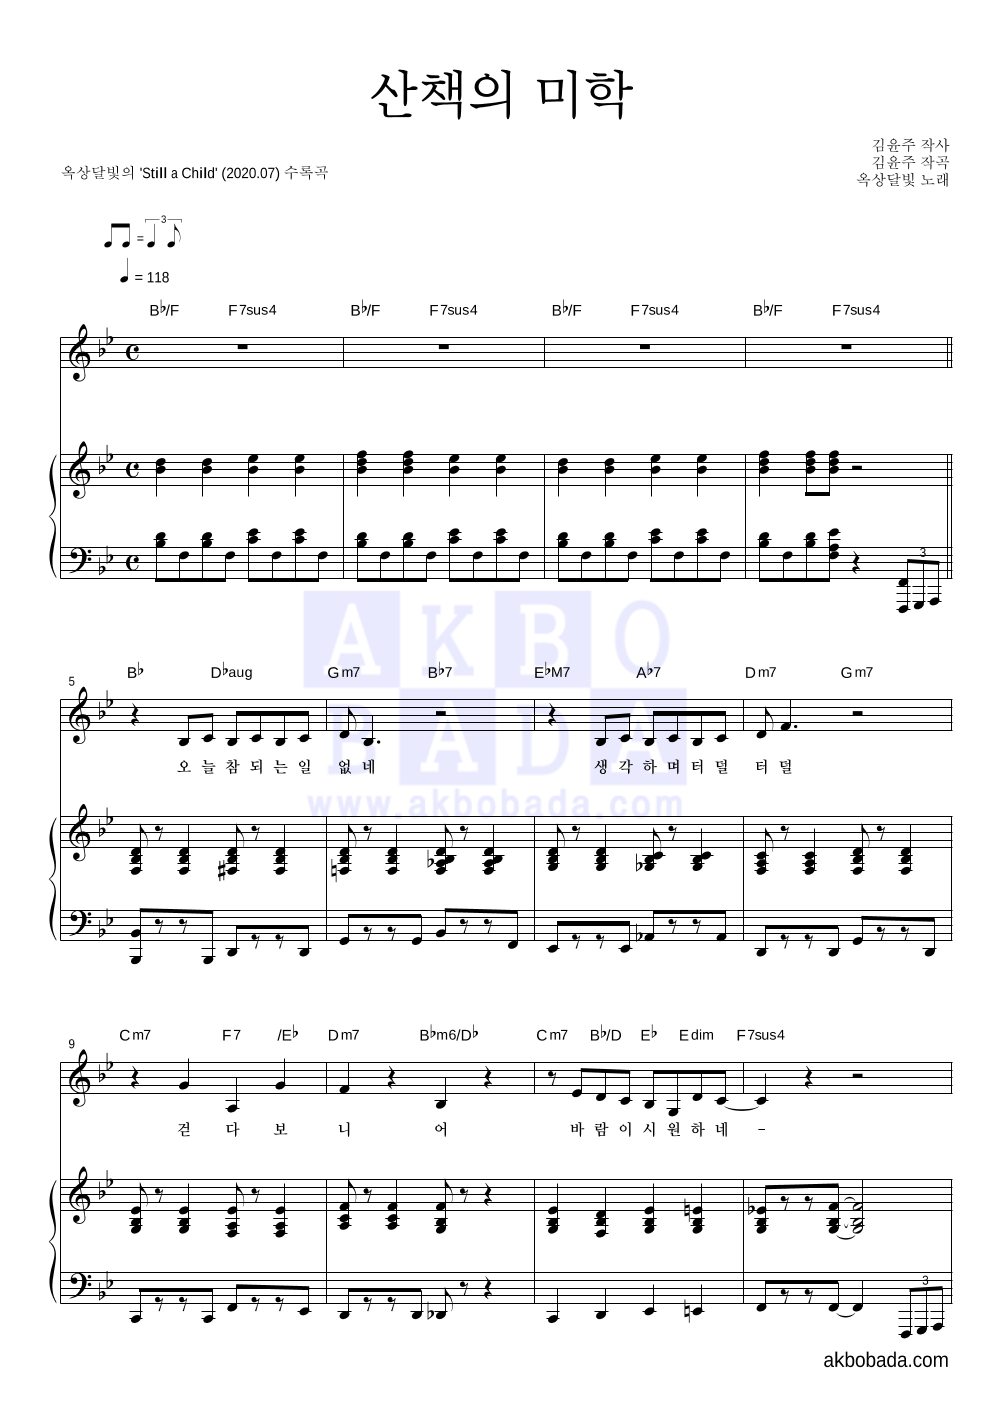 옥상달빛 - 산책의 미학 피아노 3단 악보 